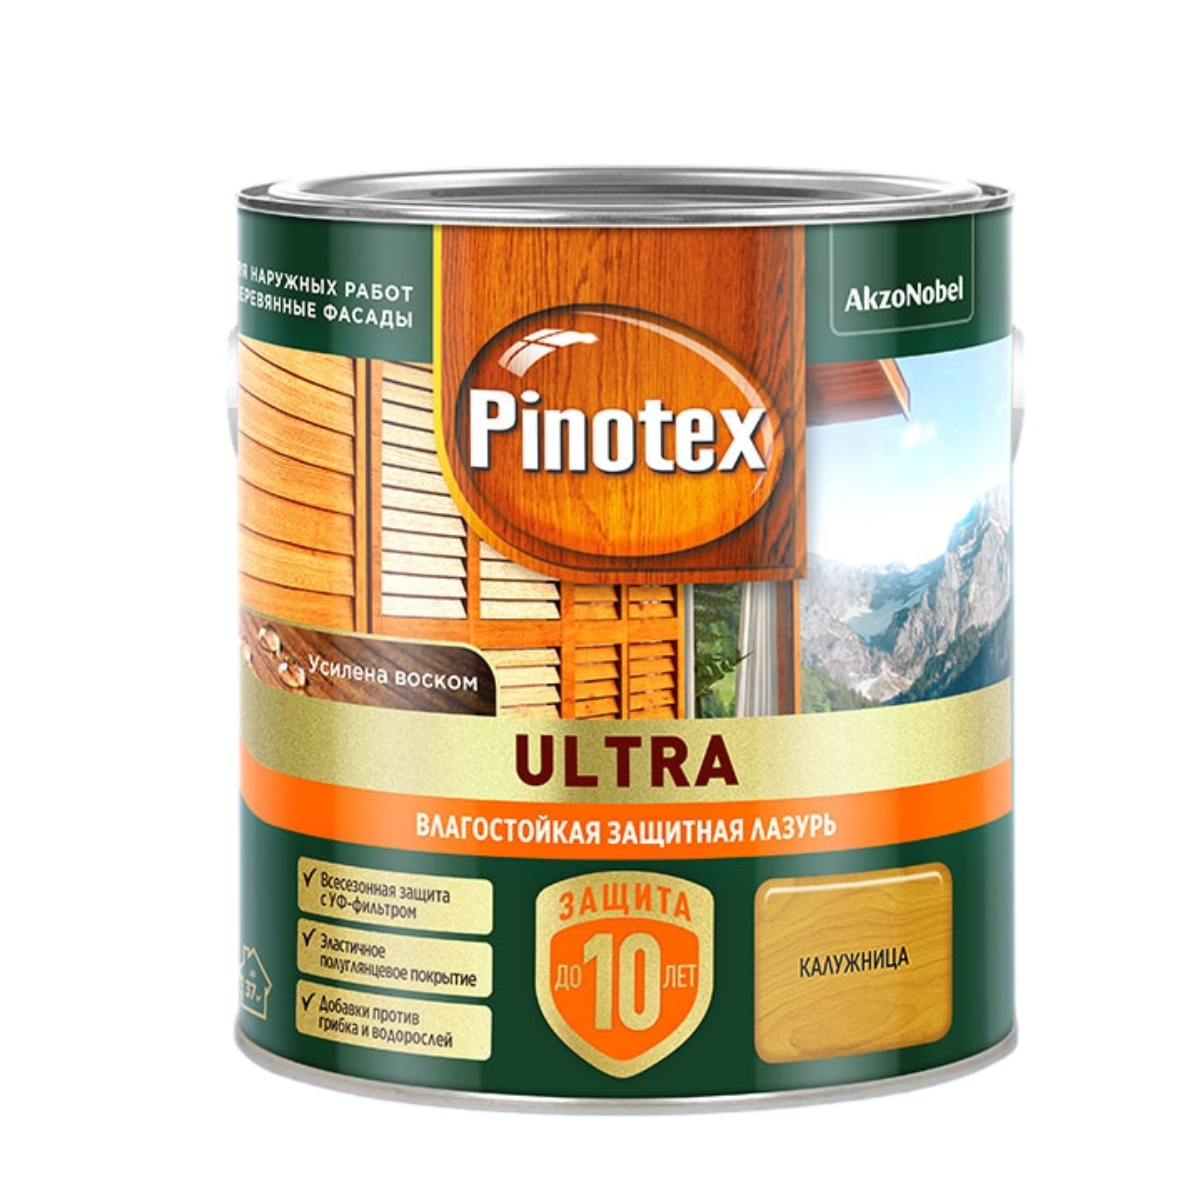 пропитка pinotex ultra для древесины влагостойкая защитная лазурь орех 0 9 л Лазурь для дерева Pinotex Ultra влагостойкая, калужница, 2,5 л